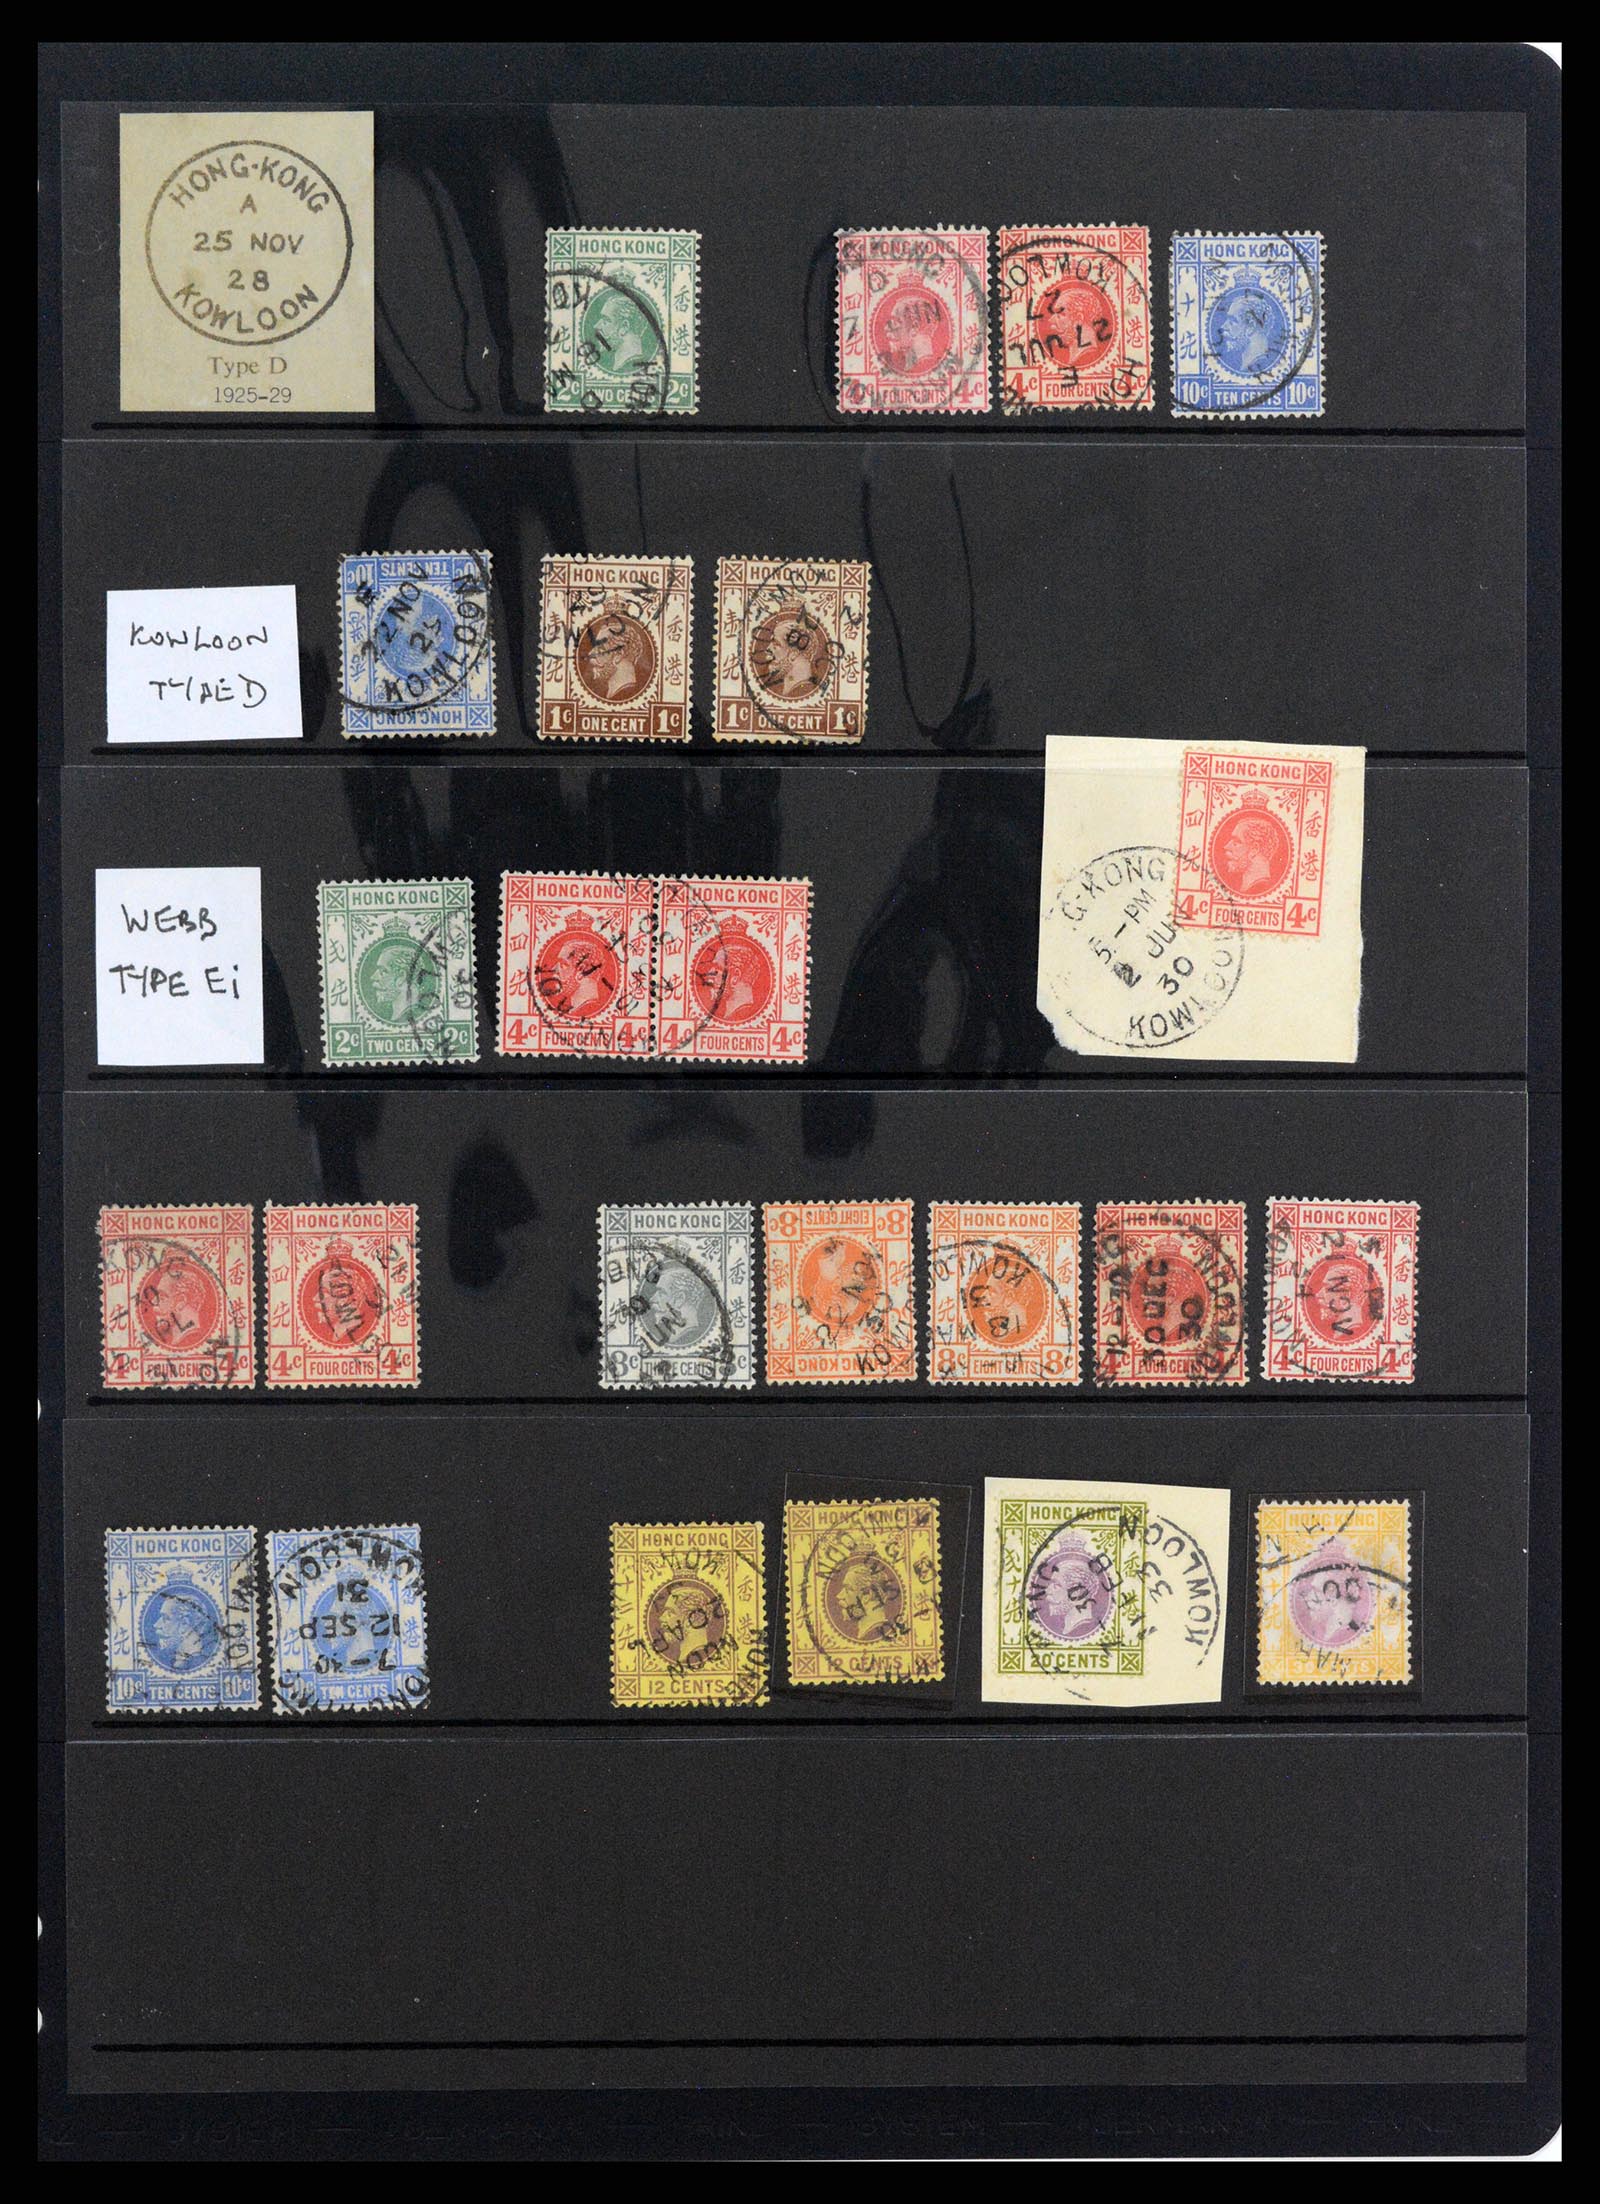 37358 064 - Stamp collection 37358 Hong Kong 1861-1997.